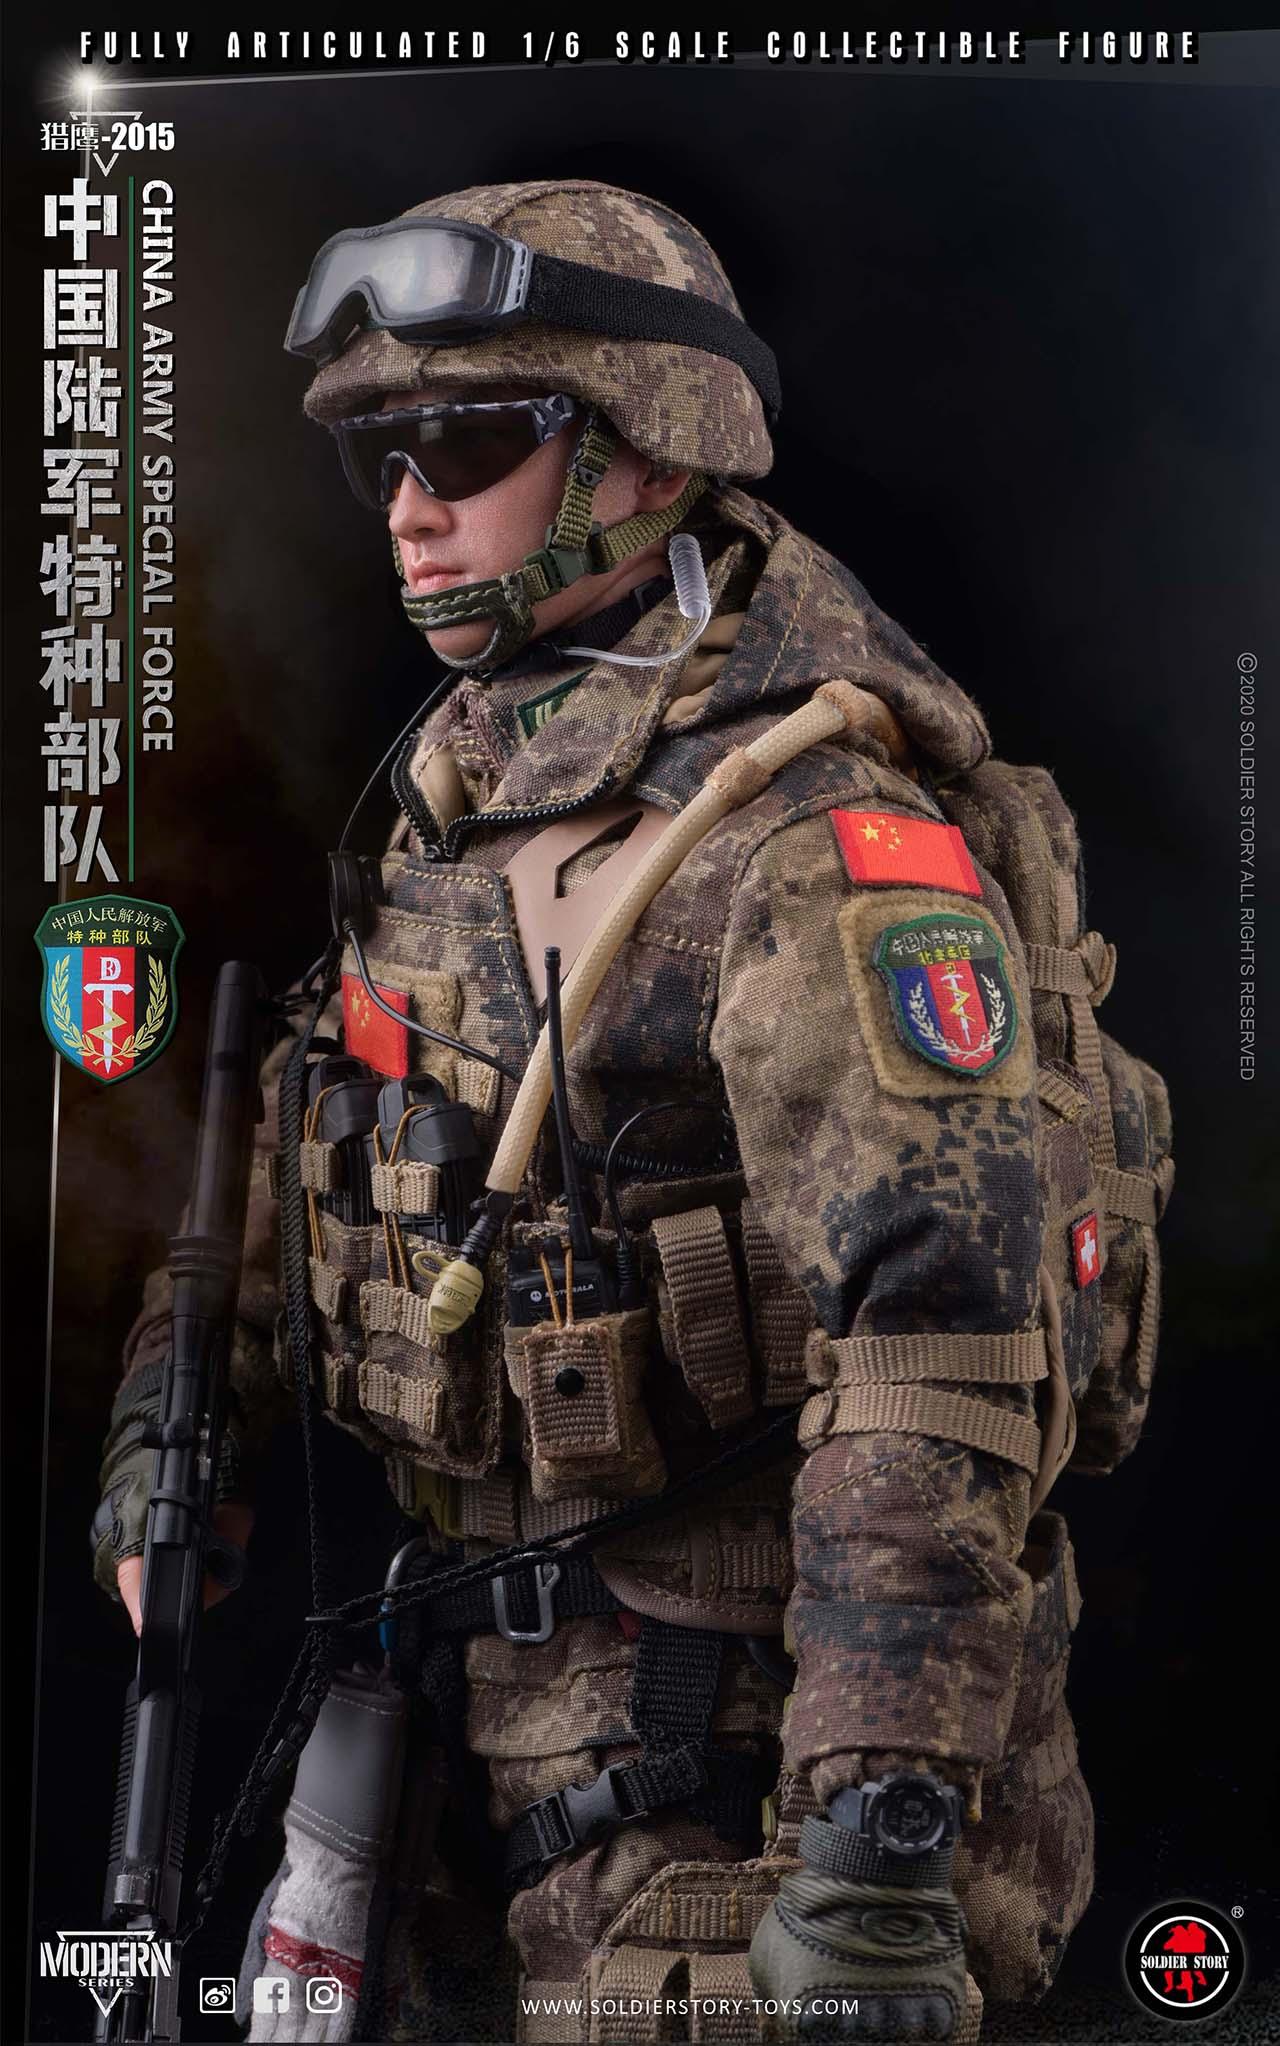 上海陆军特种部队霹雳图片